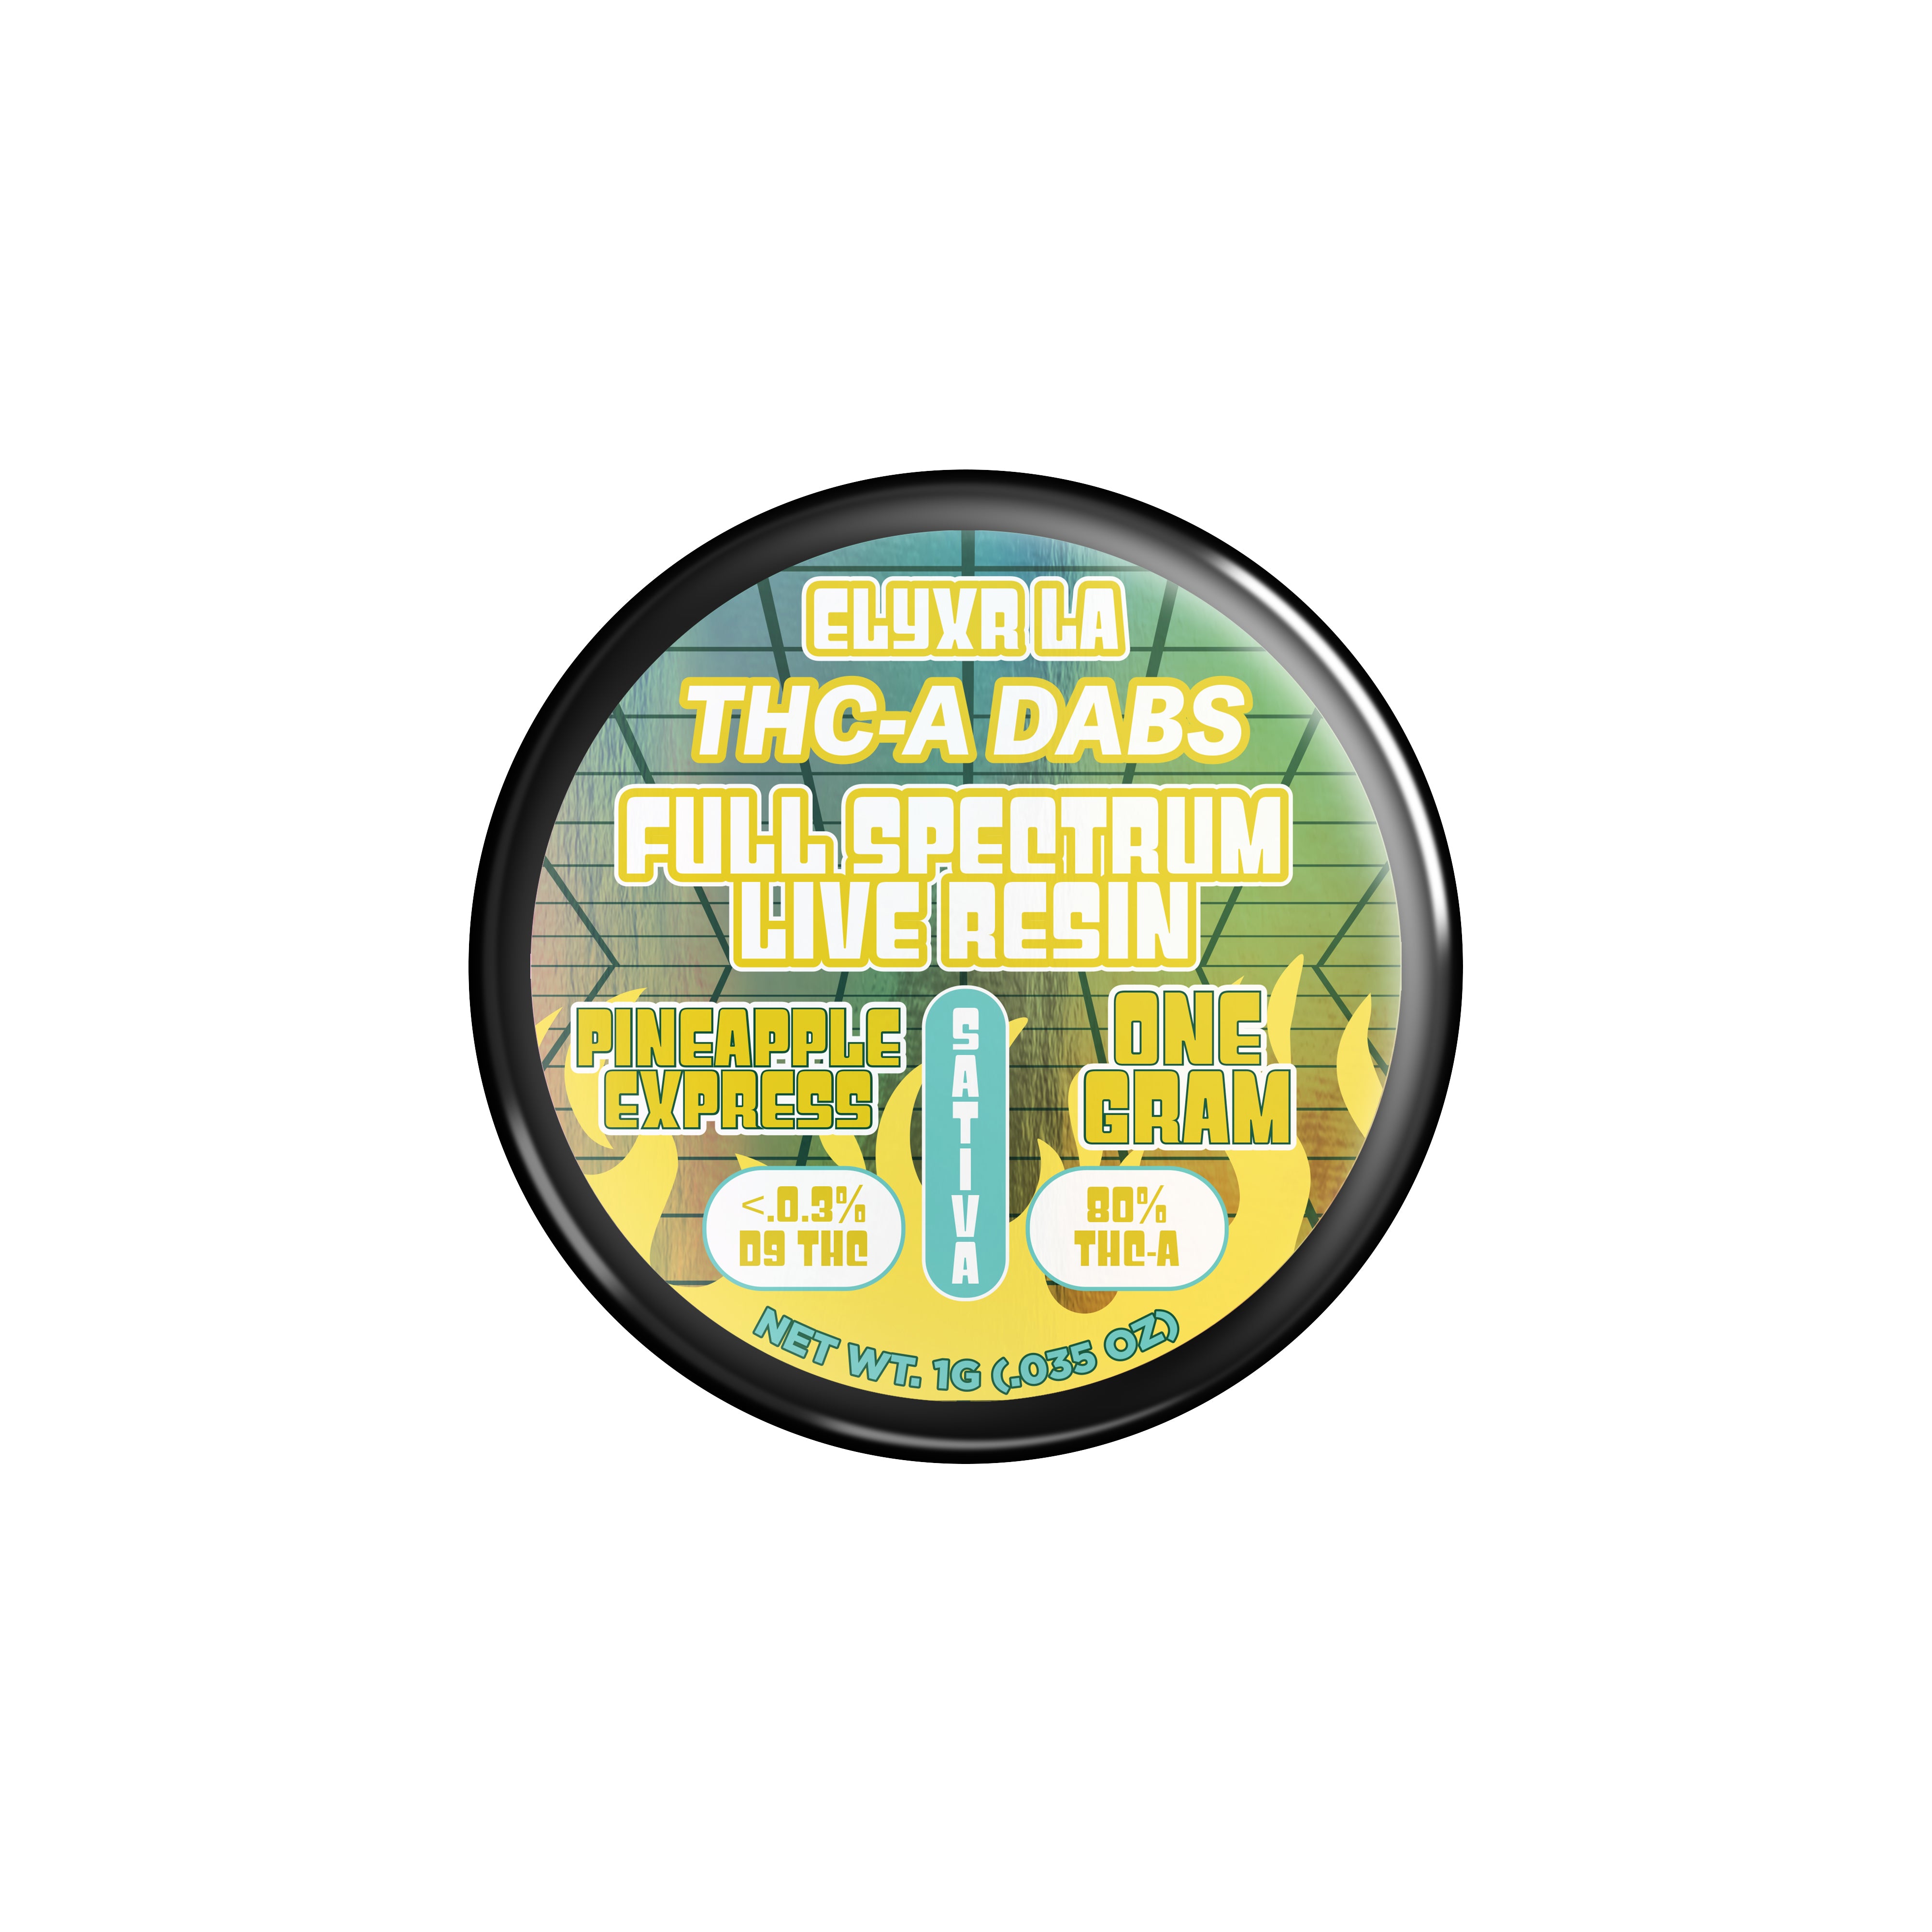 THC-A Full Spectrum Live Resin Dabs (Badder)